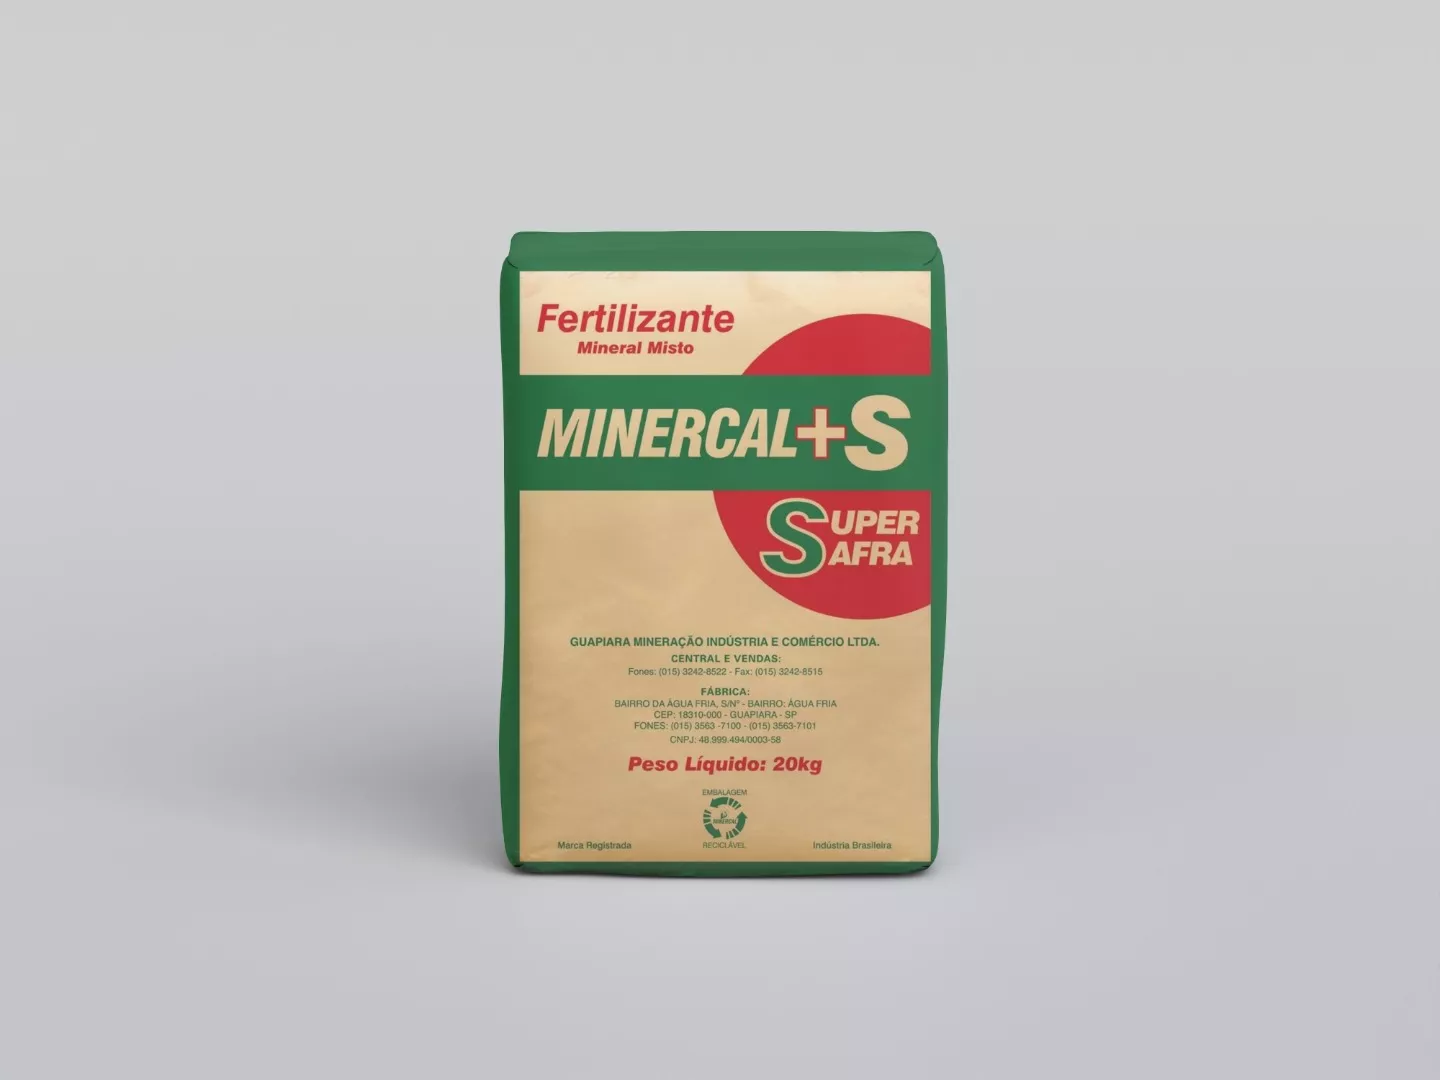 Fertilizante Mineral Misto - Minercal +S